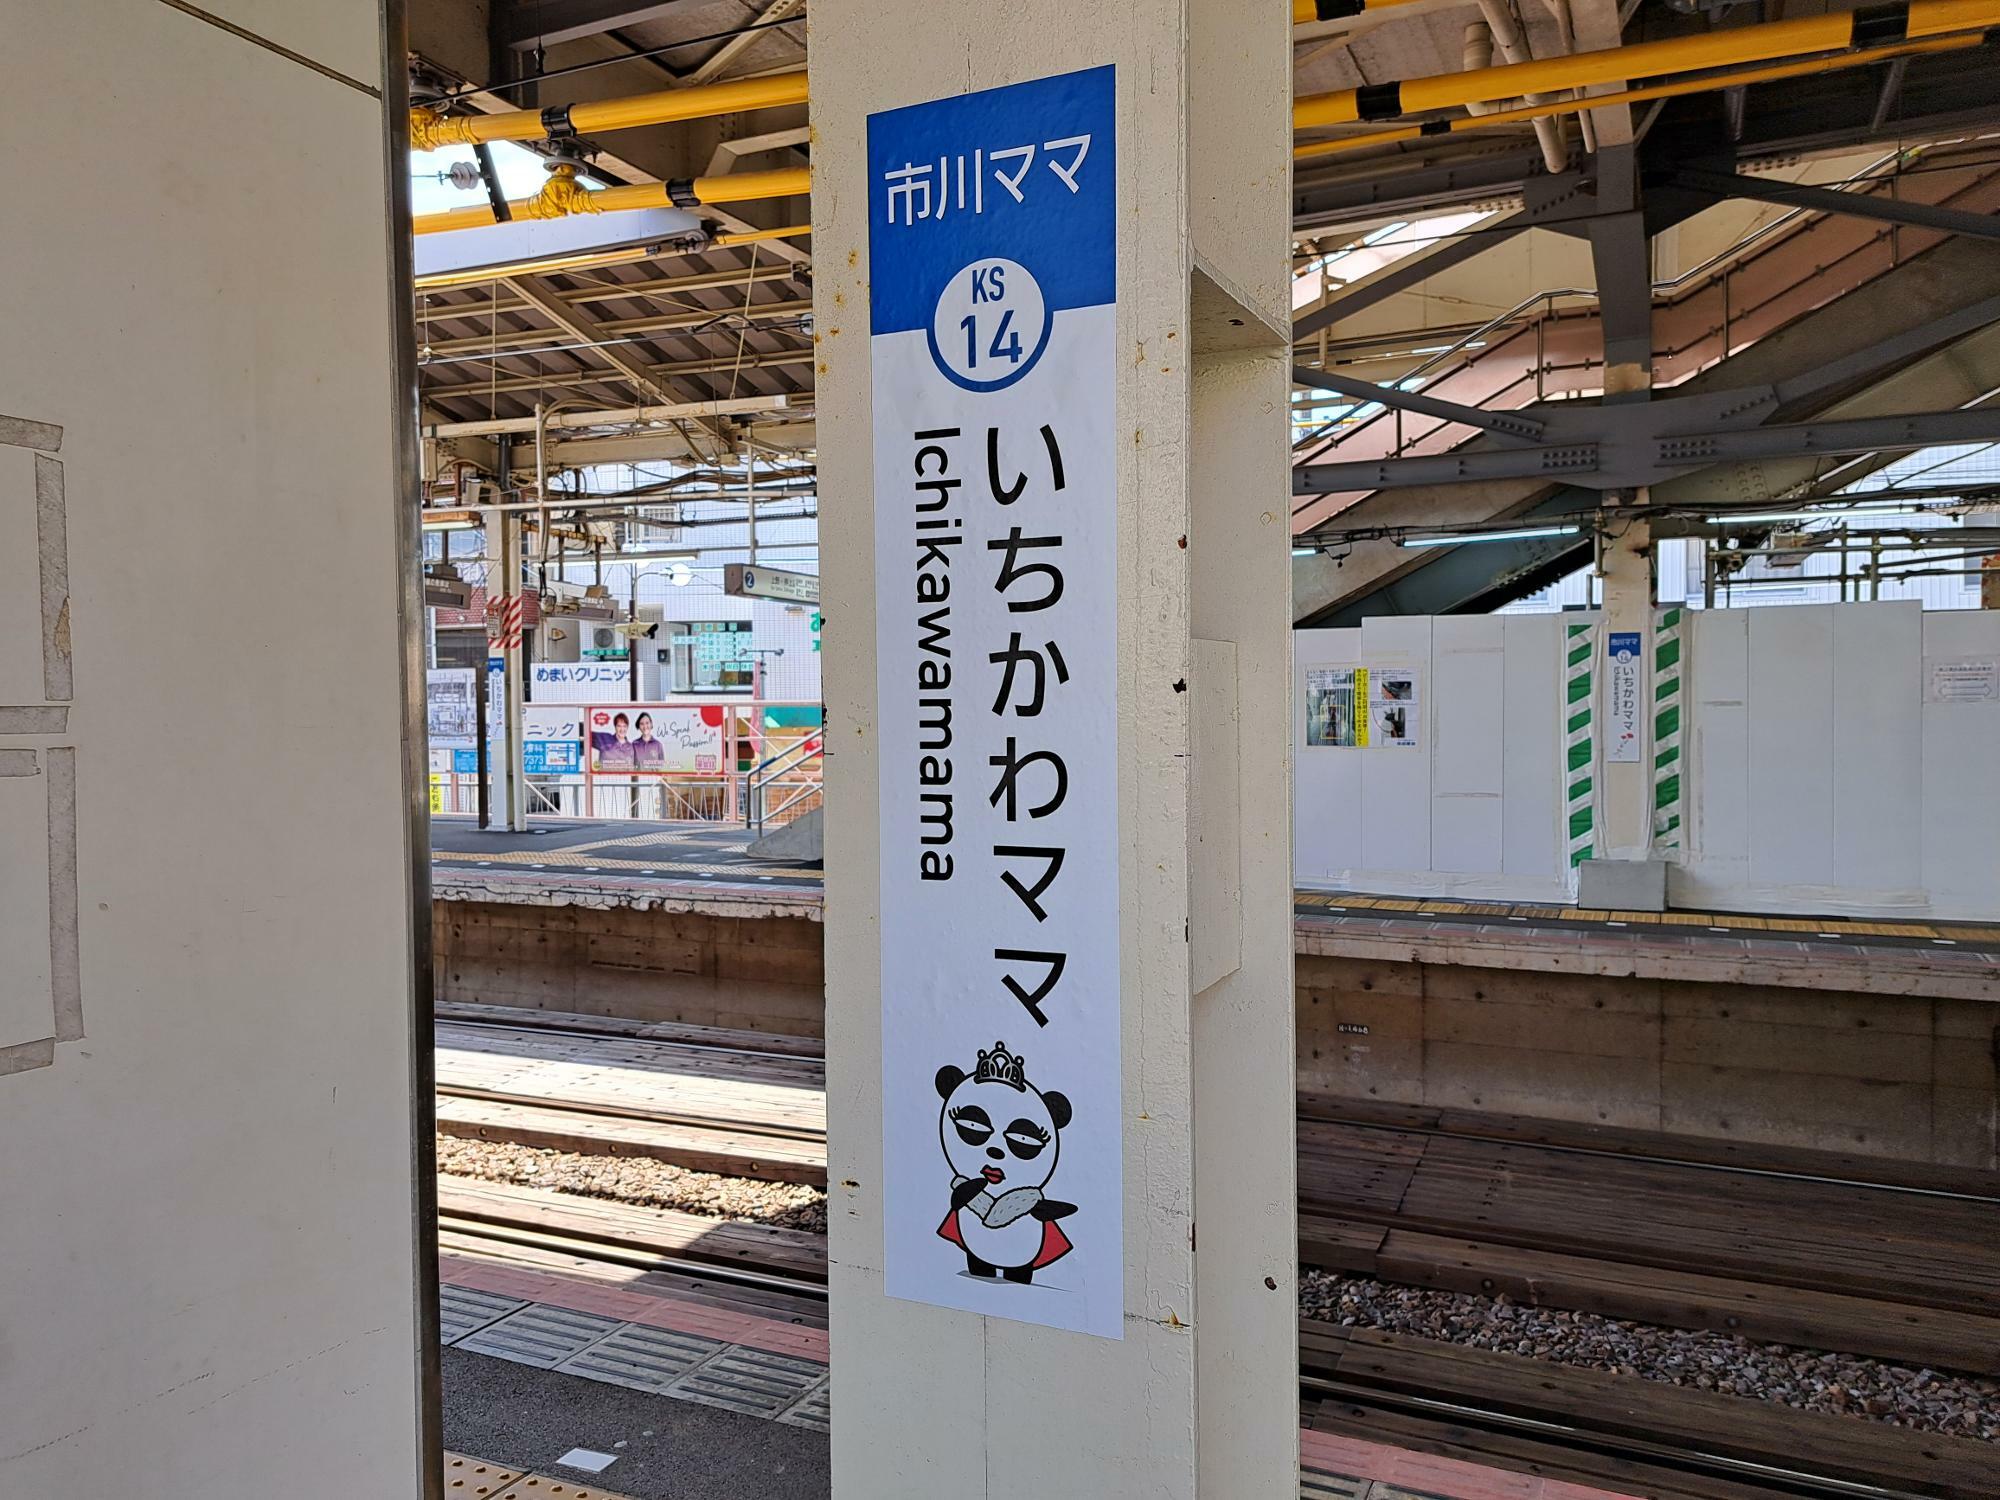 いちかわママ駅には1か所だけ「京成パンダ」があります。